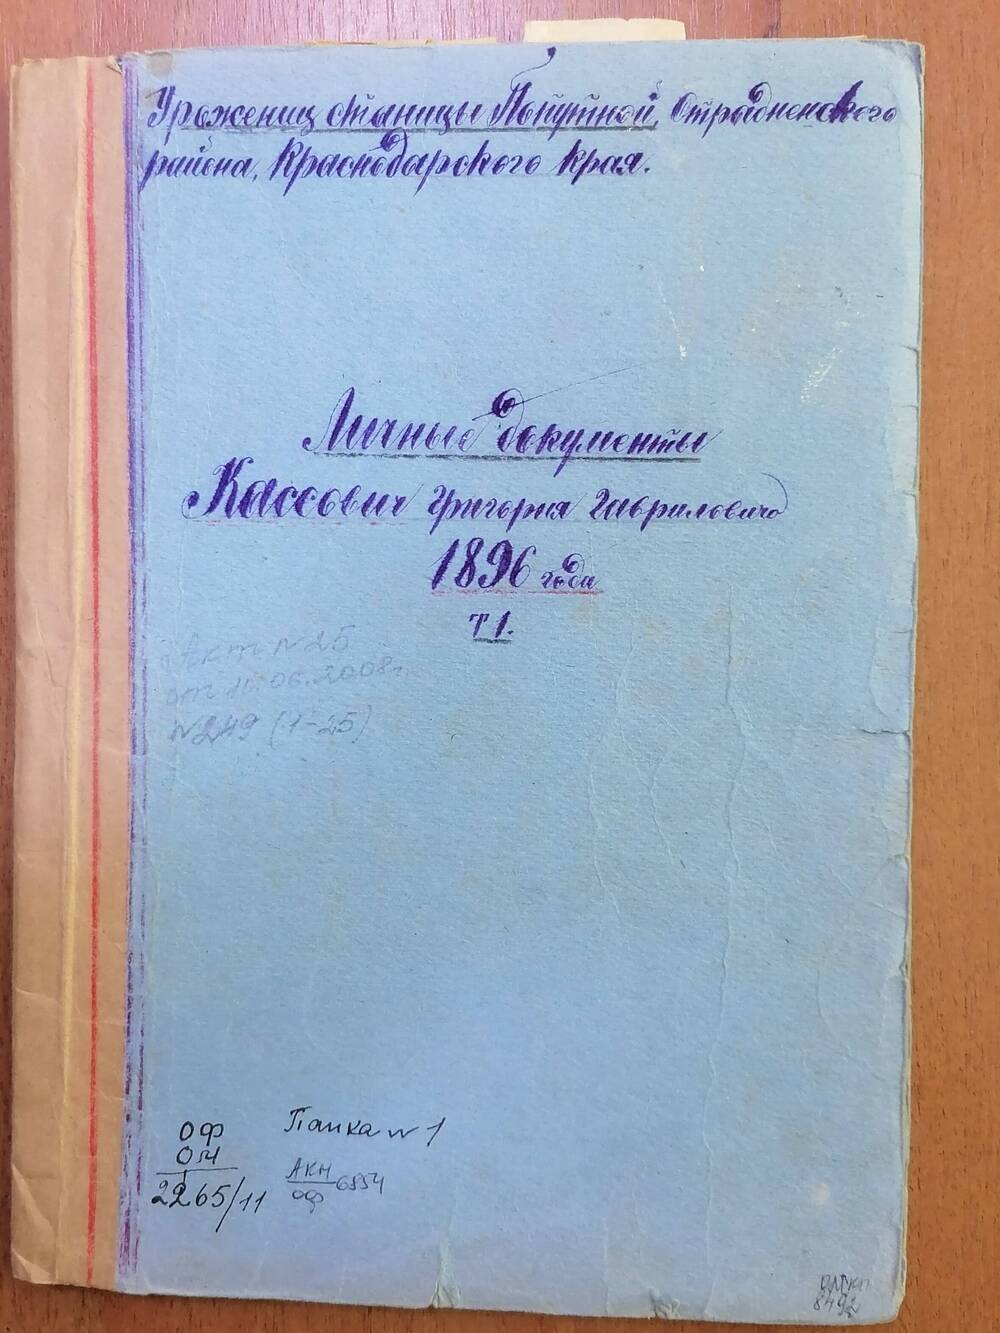 Папка № 1 с документами Кассович Григория Гавриловича